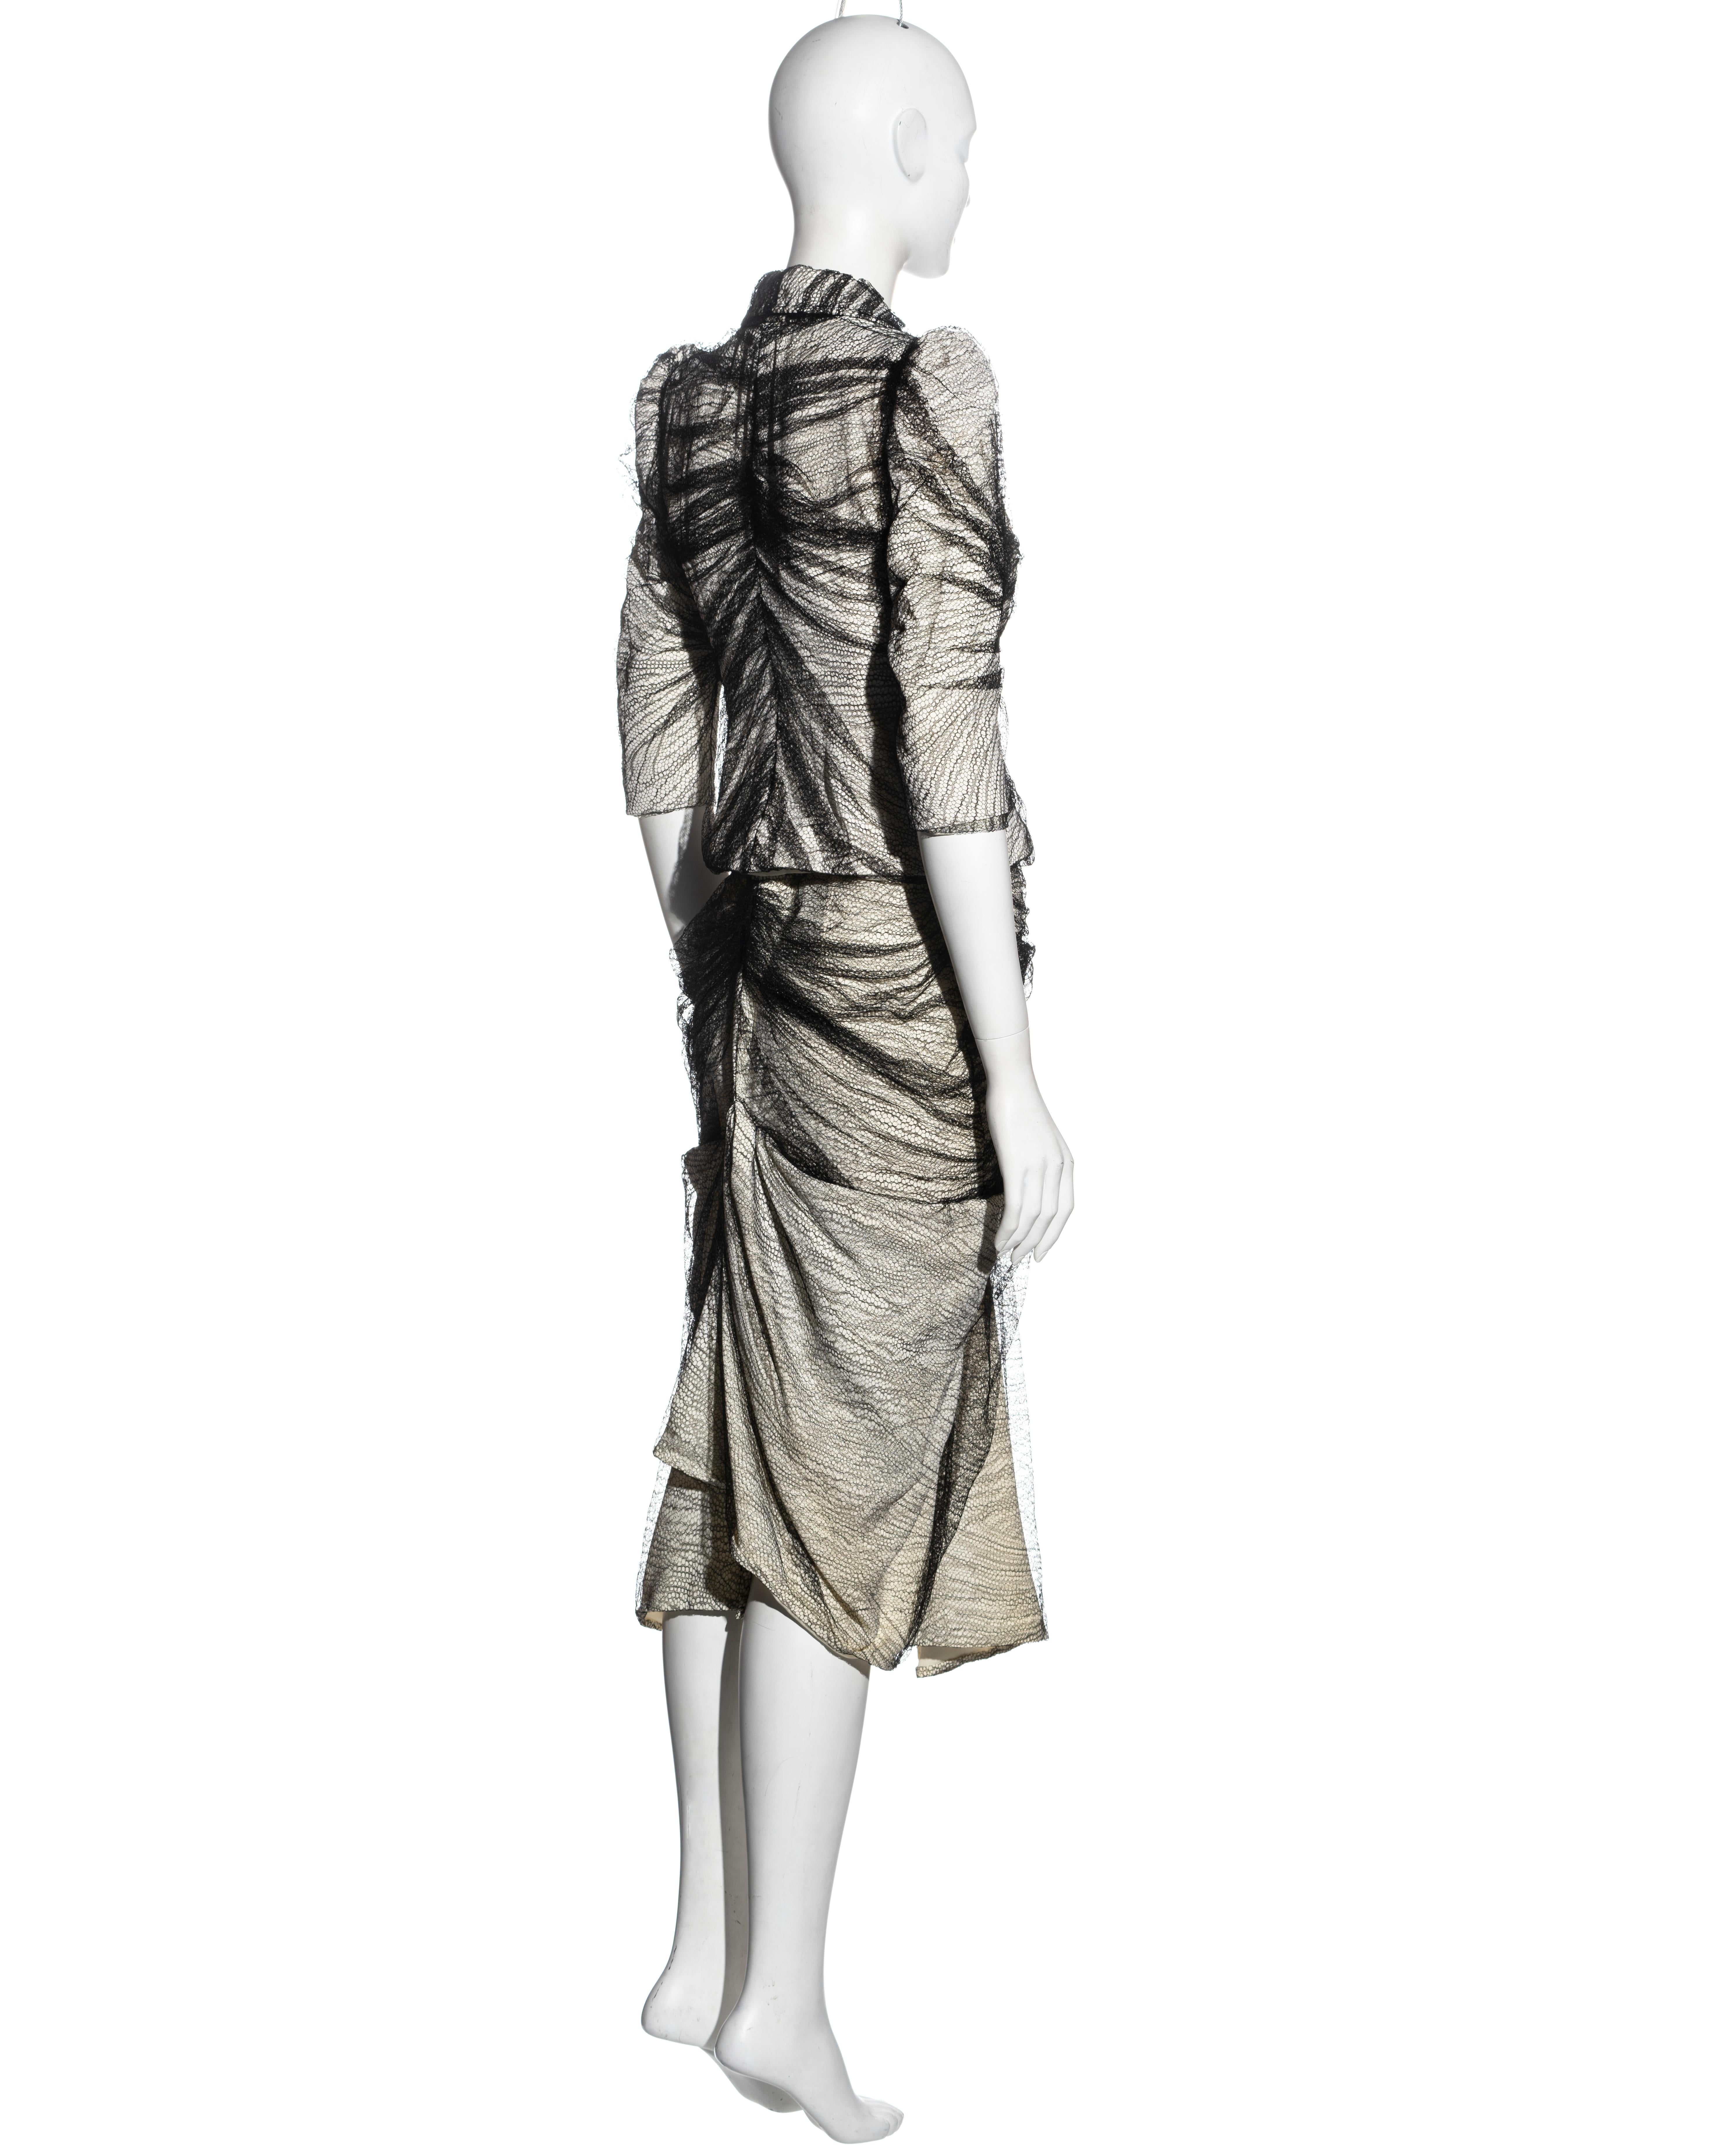 Women's Alexander McQueen 'Sarabande' skirt suit, ss 2007